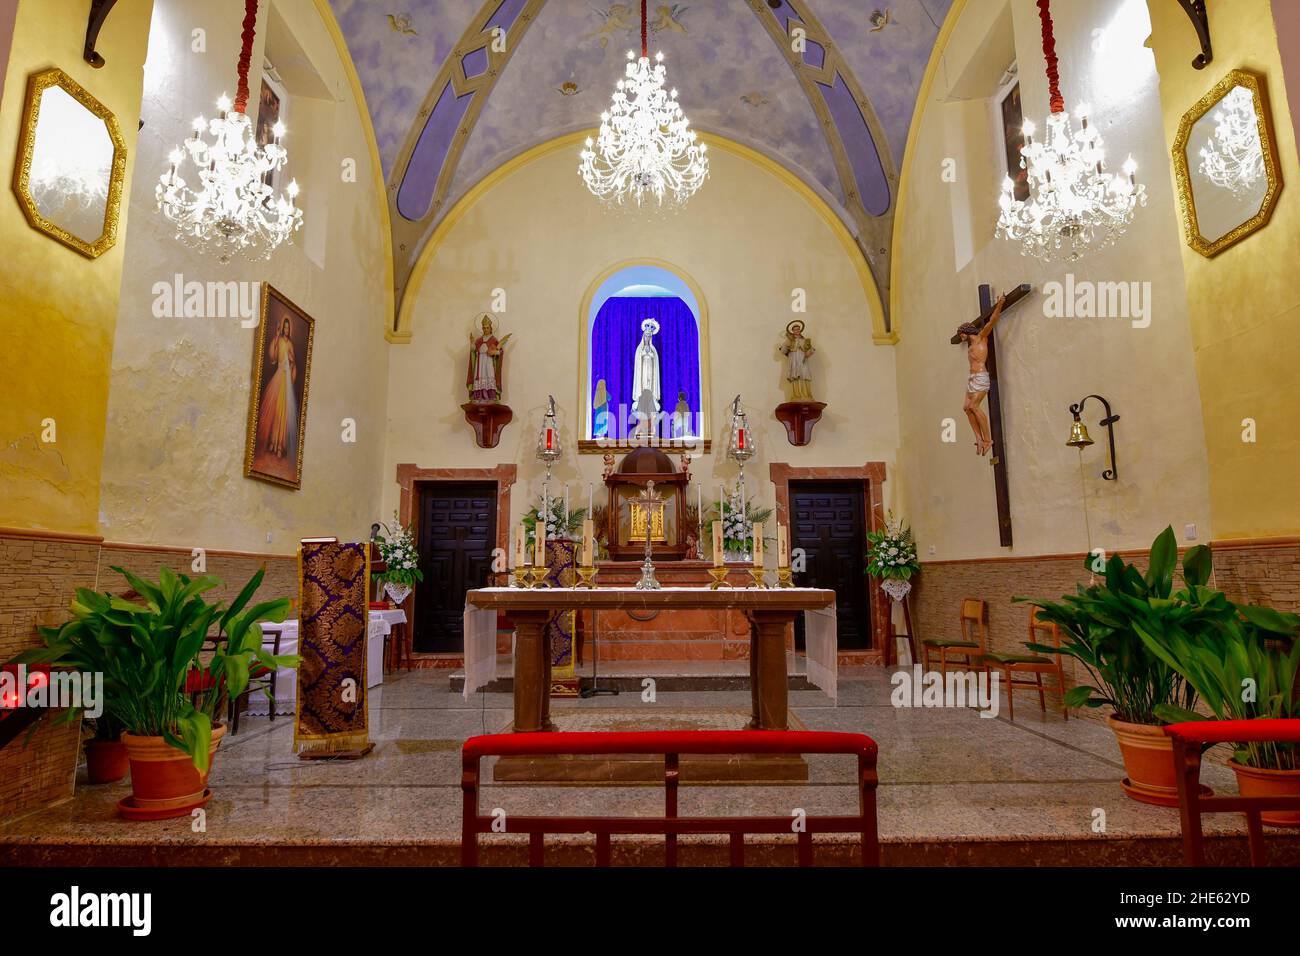 Interior of the Church of the Annunciation of Alicum de Ortega, Granada. Stock Photo